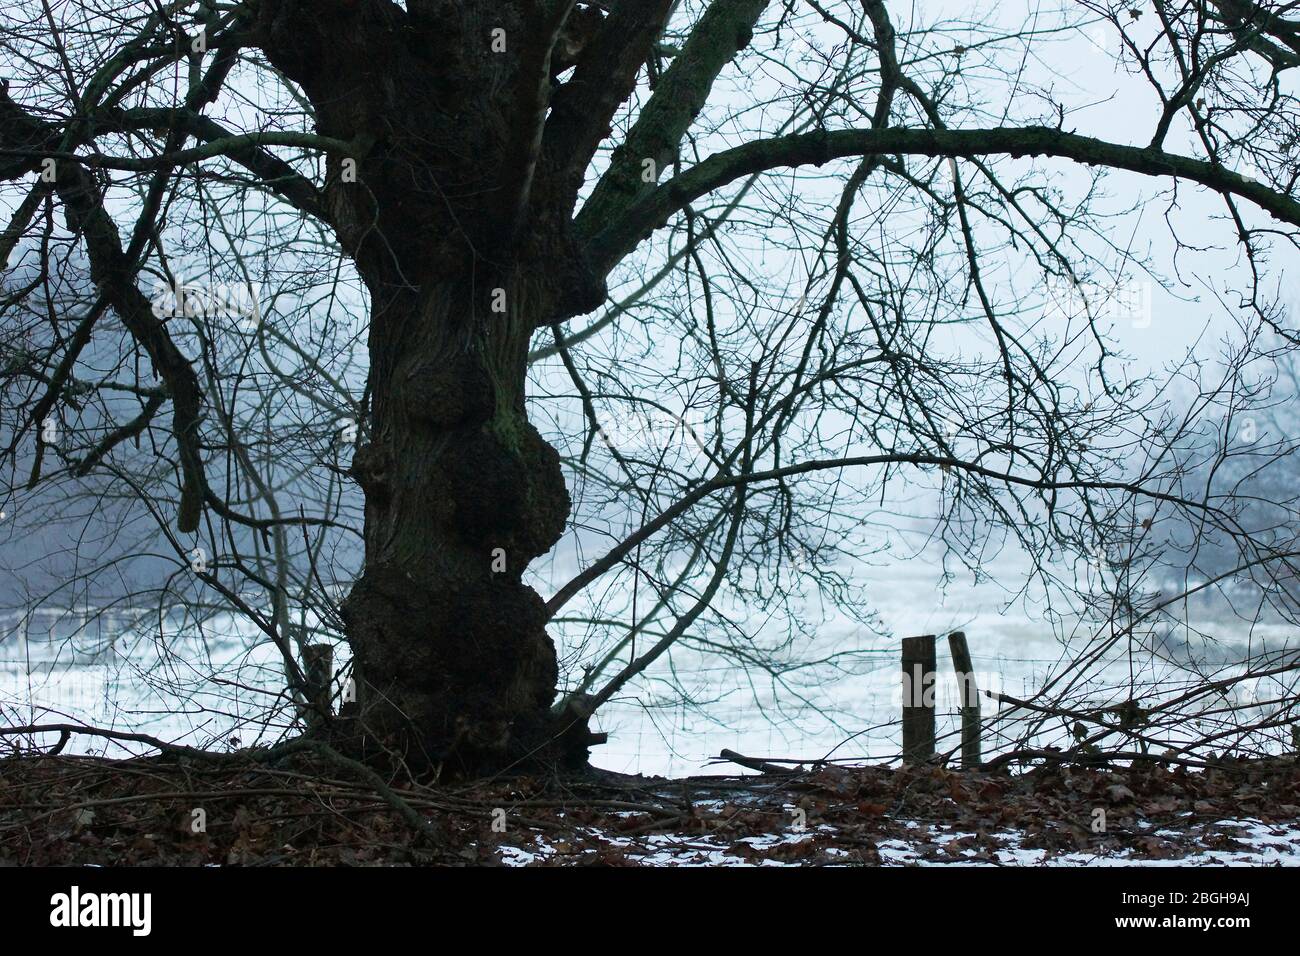 winterliche Baumsilhoutte bei leichtem Nebel Stock Photo